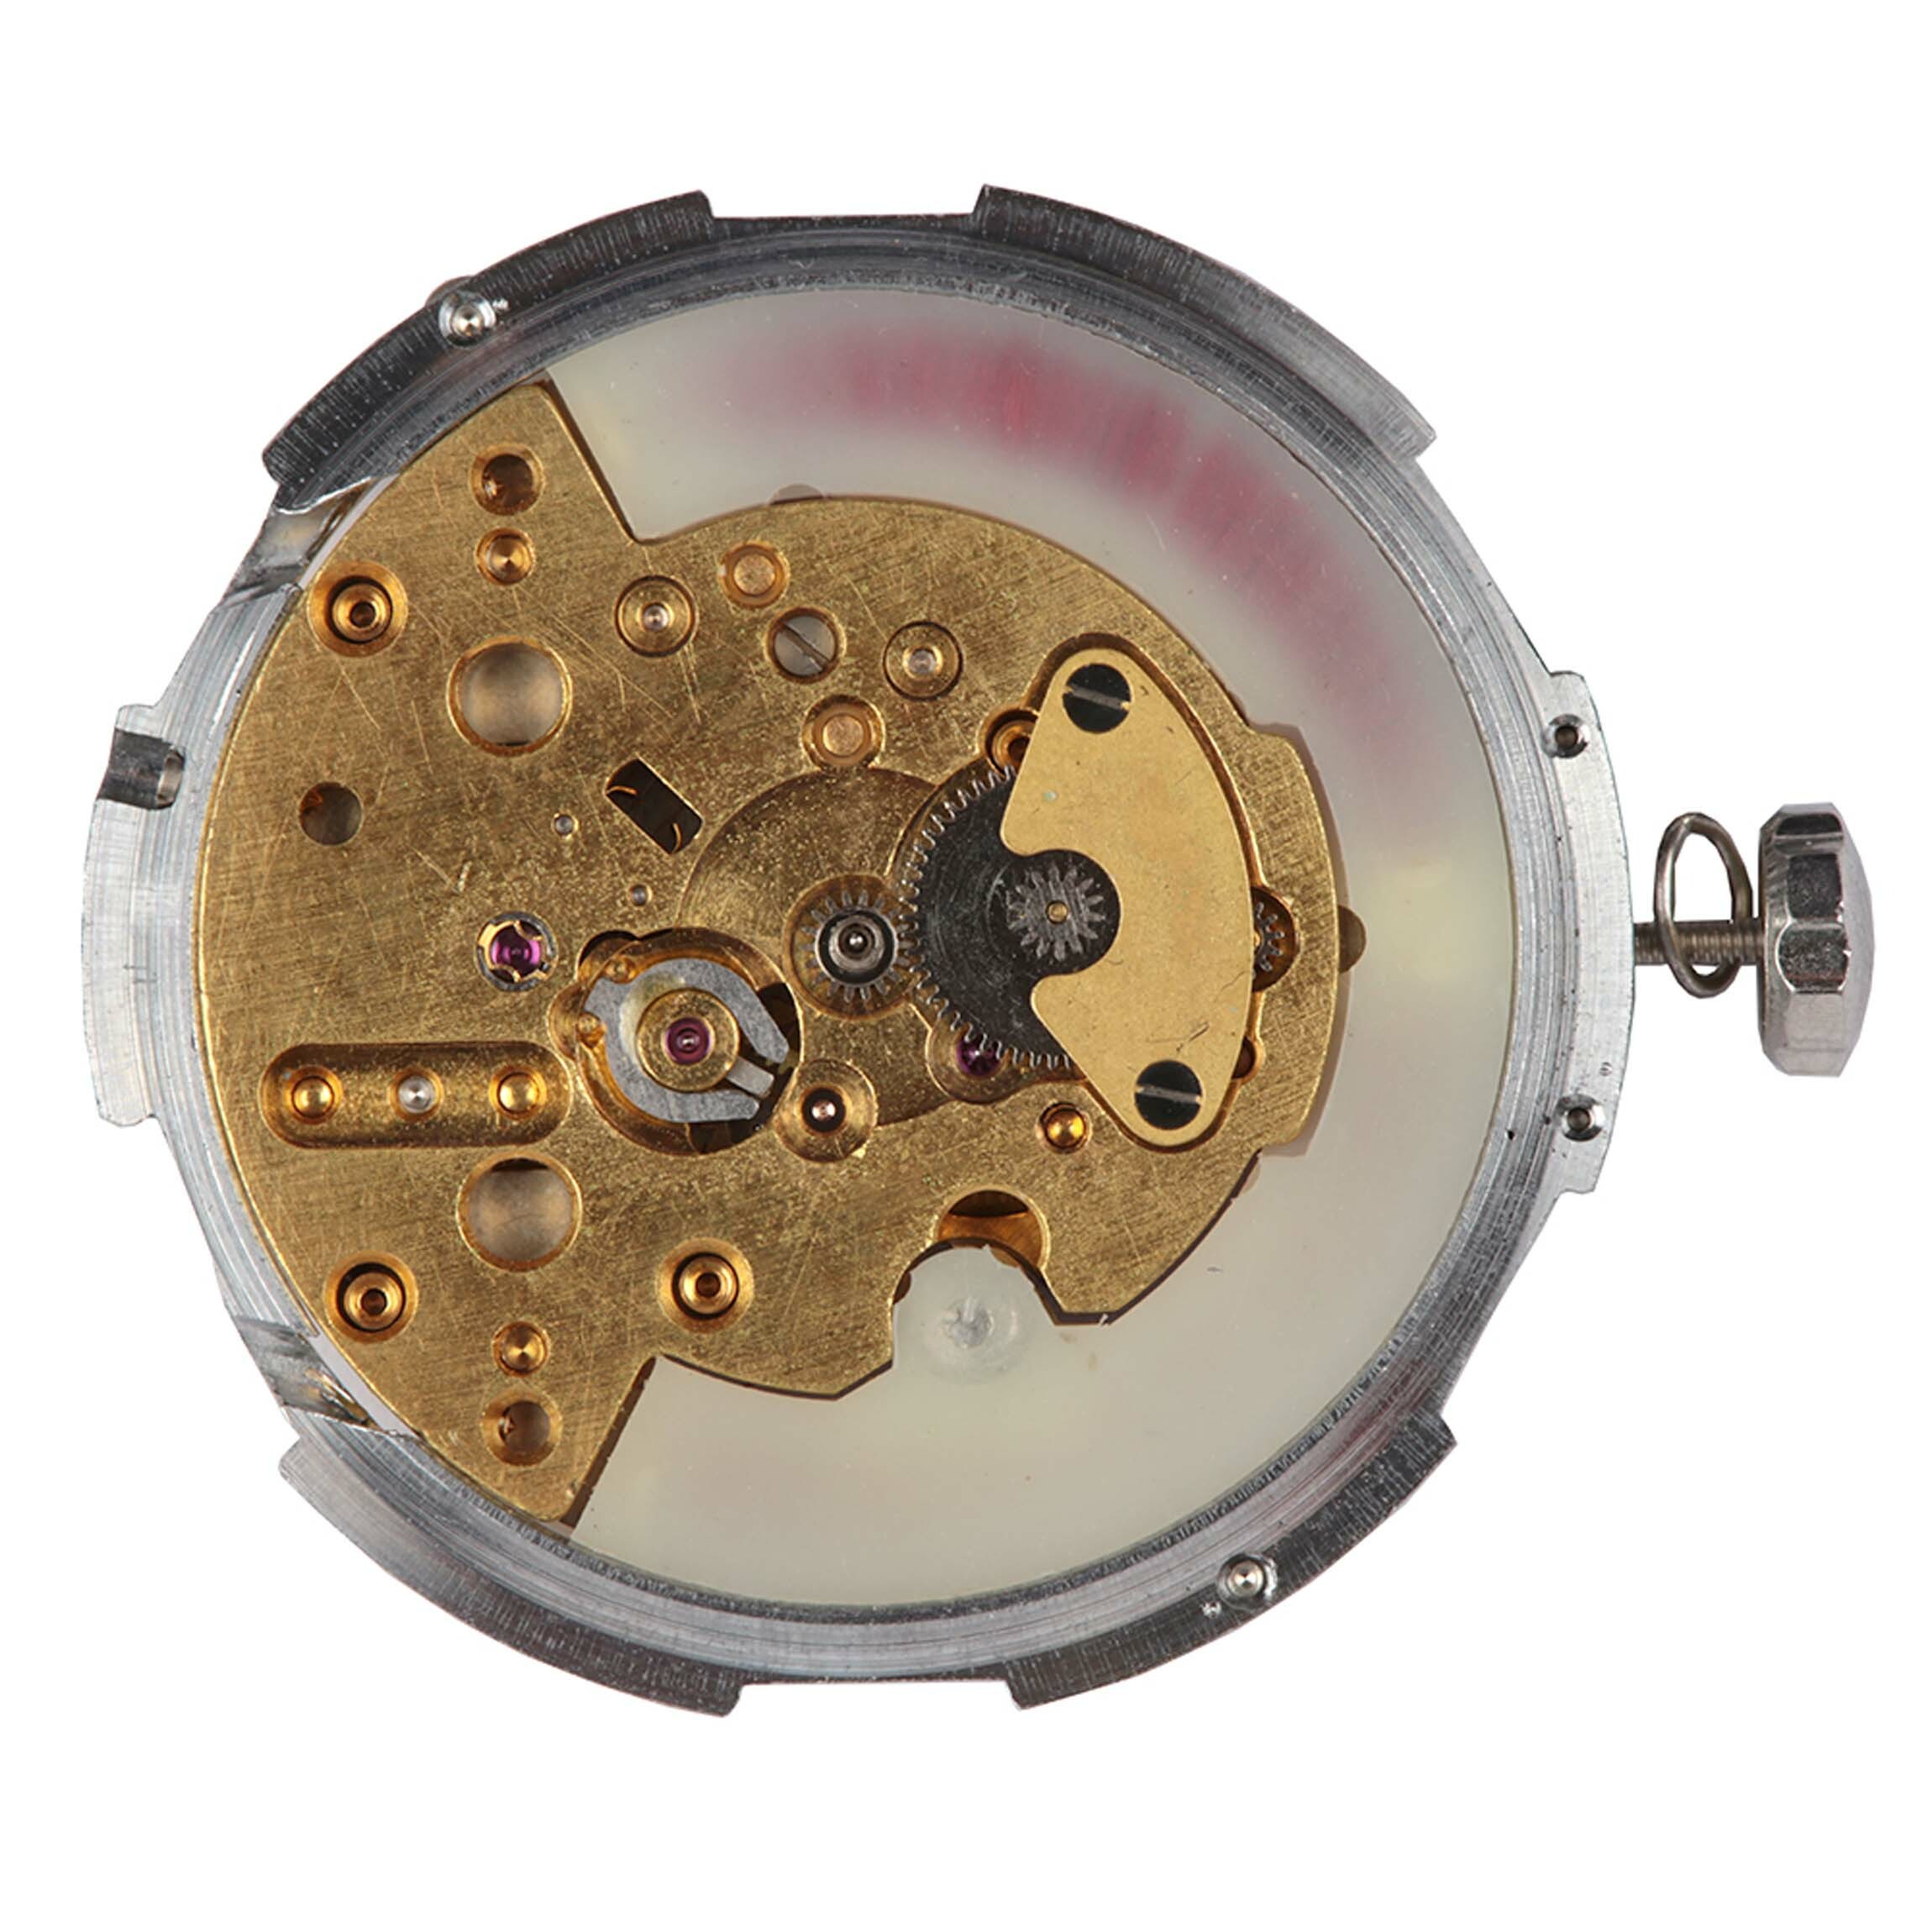 Armbanduhr, Royce, Landeron, Schweiz, um 1961 (Deutsches Uhrenmuseum CC BY-SA)